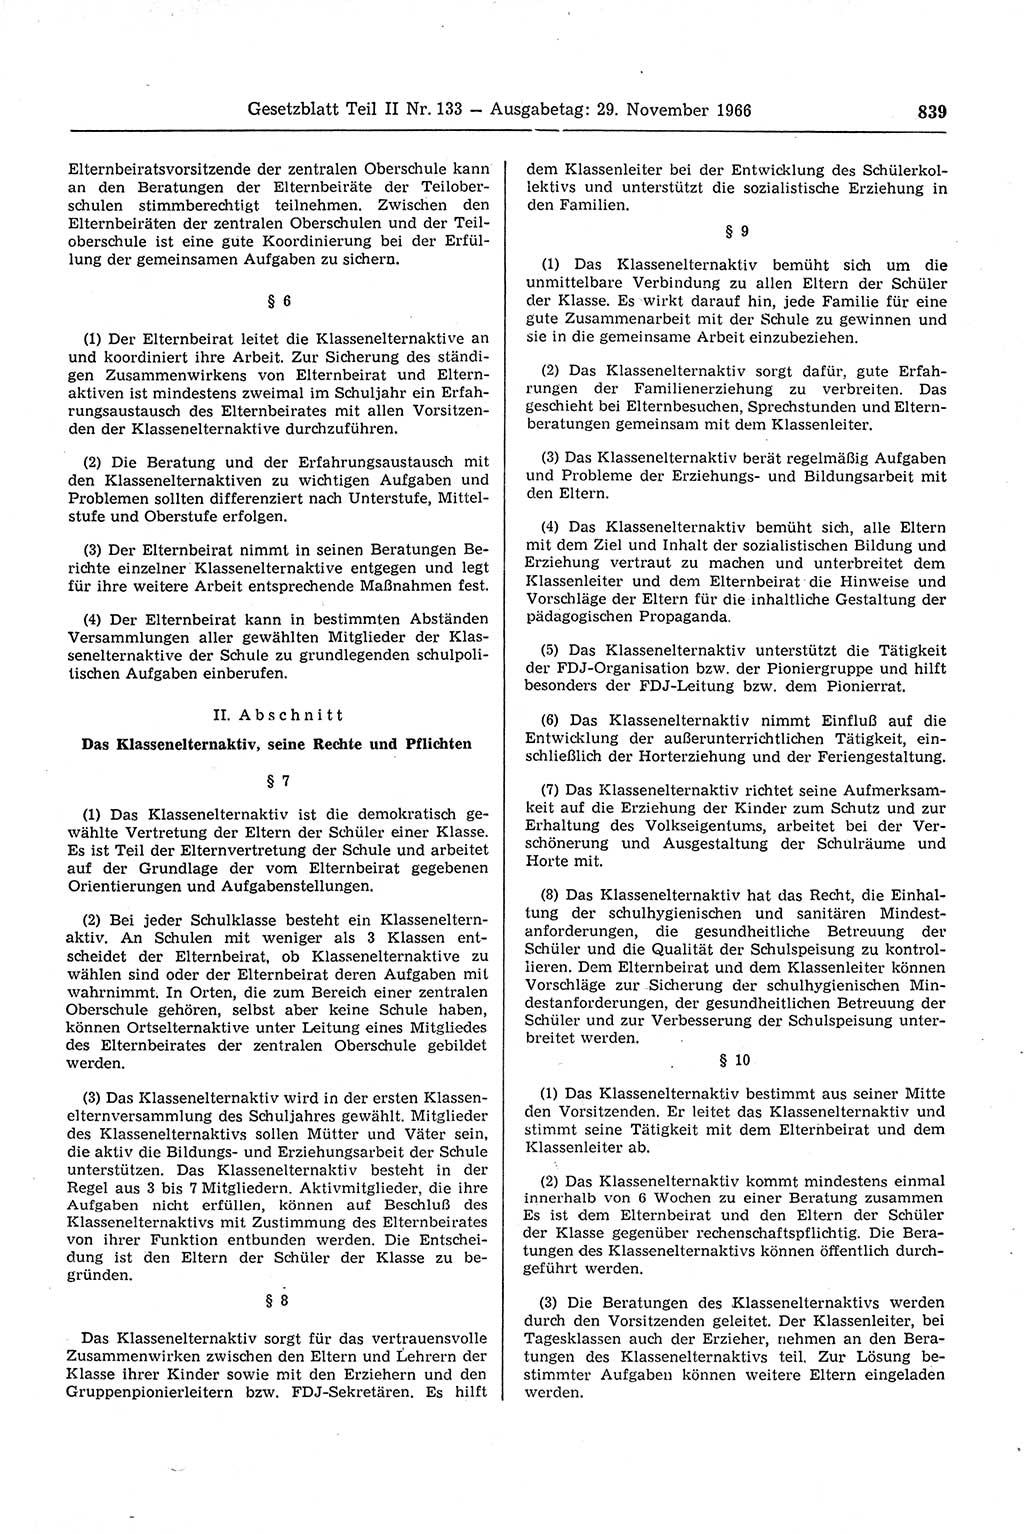 Gesetzblatt (GBl.) der Deutschen Demokratischen Republik (DDR) Teil ⅠⅠ 1966, Seite 839 (GBl. DDR ⅠⅠ 1966, S. 839)